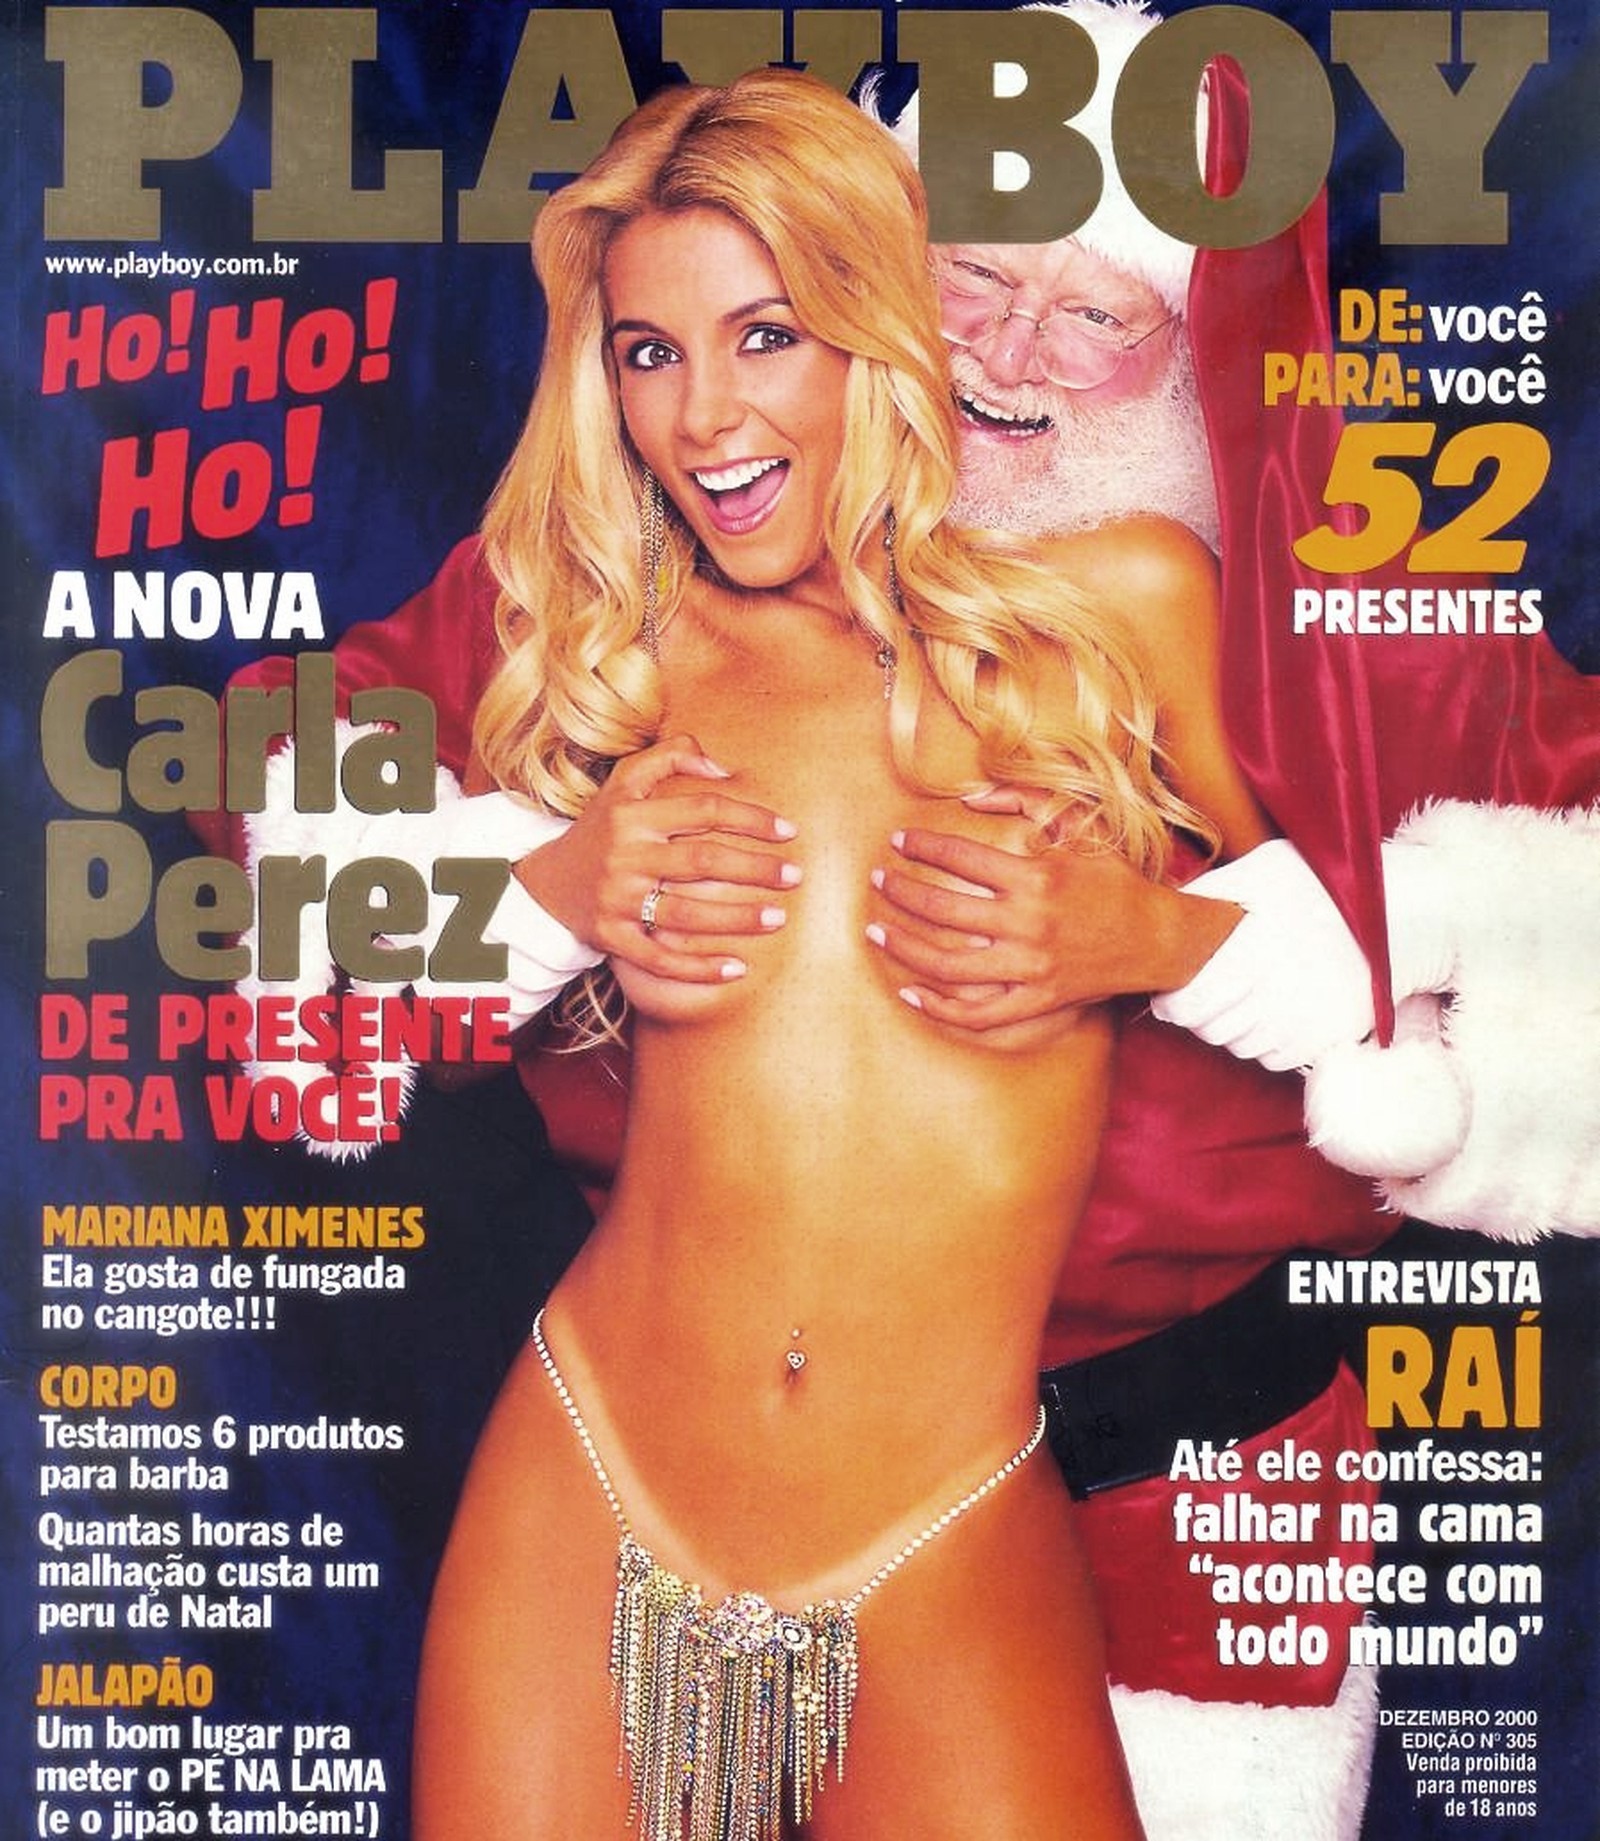 Carla Perez na polêmica capa da "Playboy" — Foto: divulgação